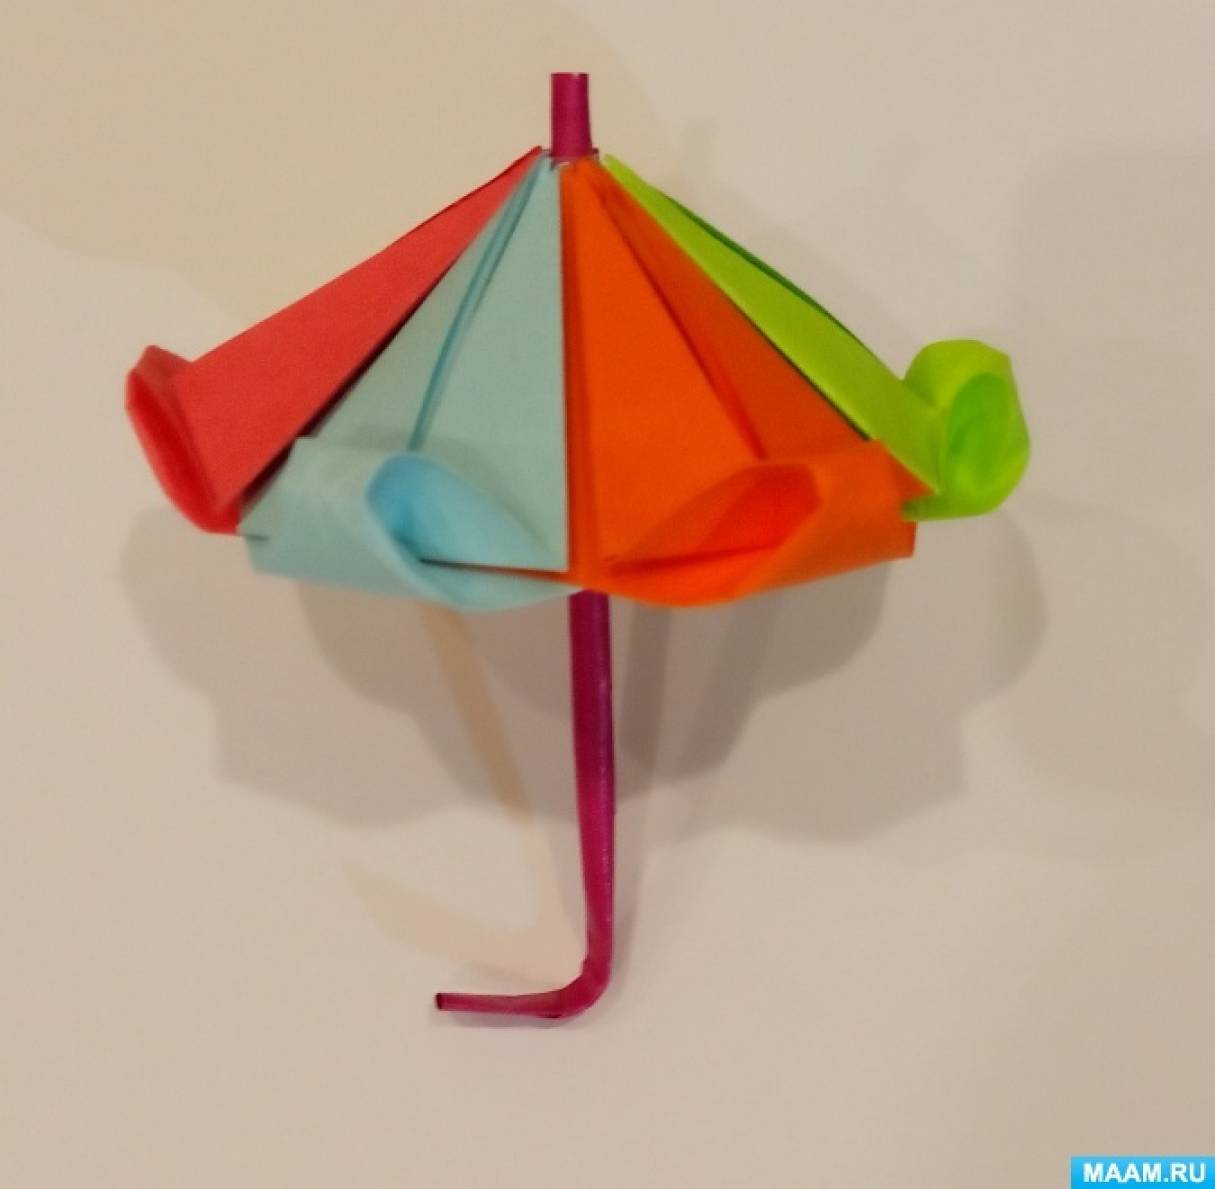 Роспись зонтов - выездной творческий мастер-класс на мероприятие | Чайно-Творческая Мастерская